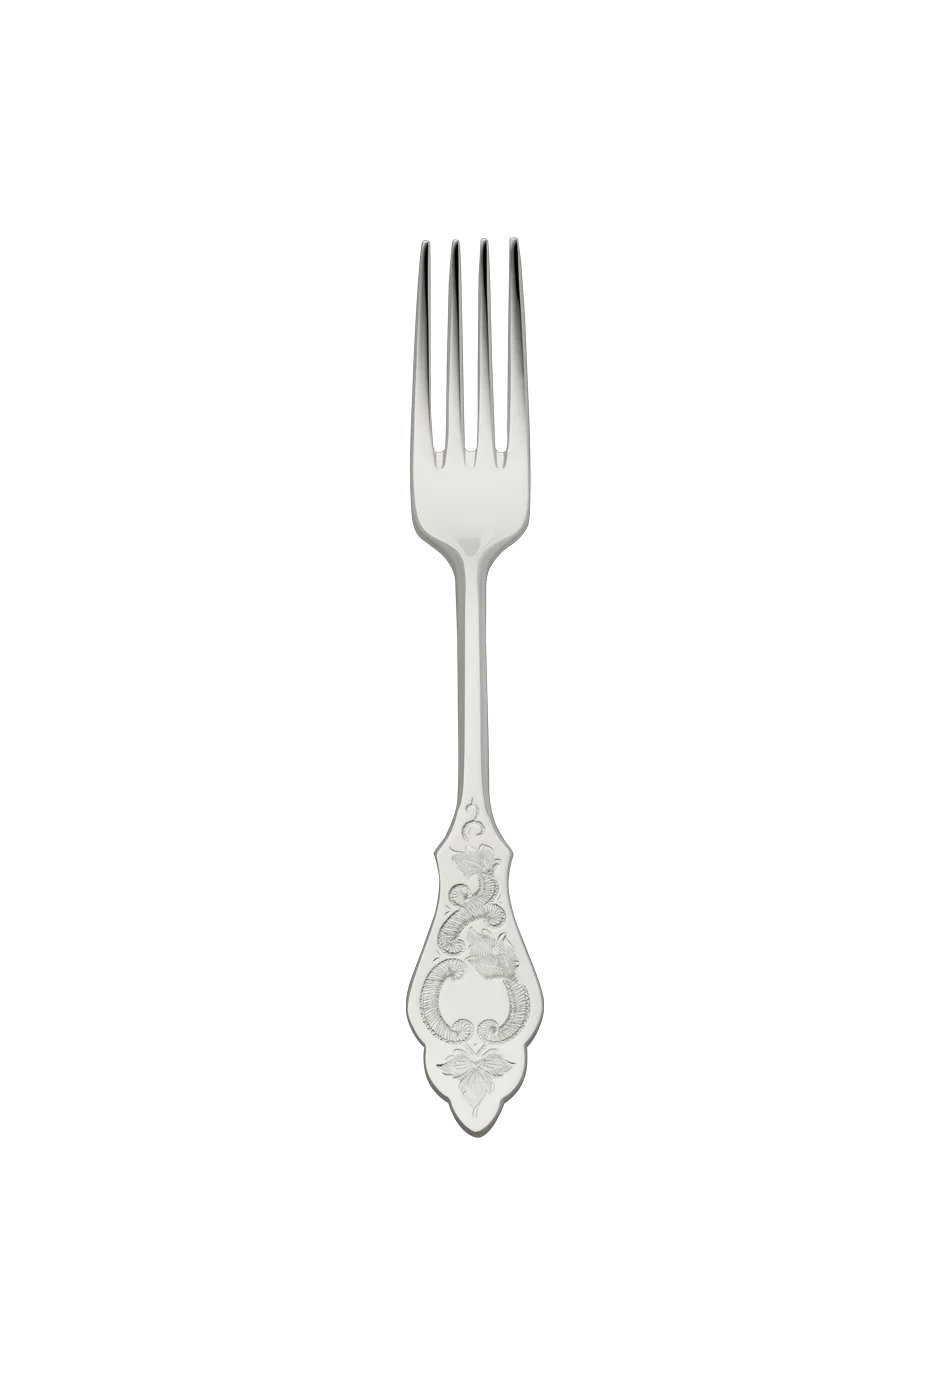 Ostfriesen Menu Fork (18/8 stainless steel)